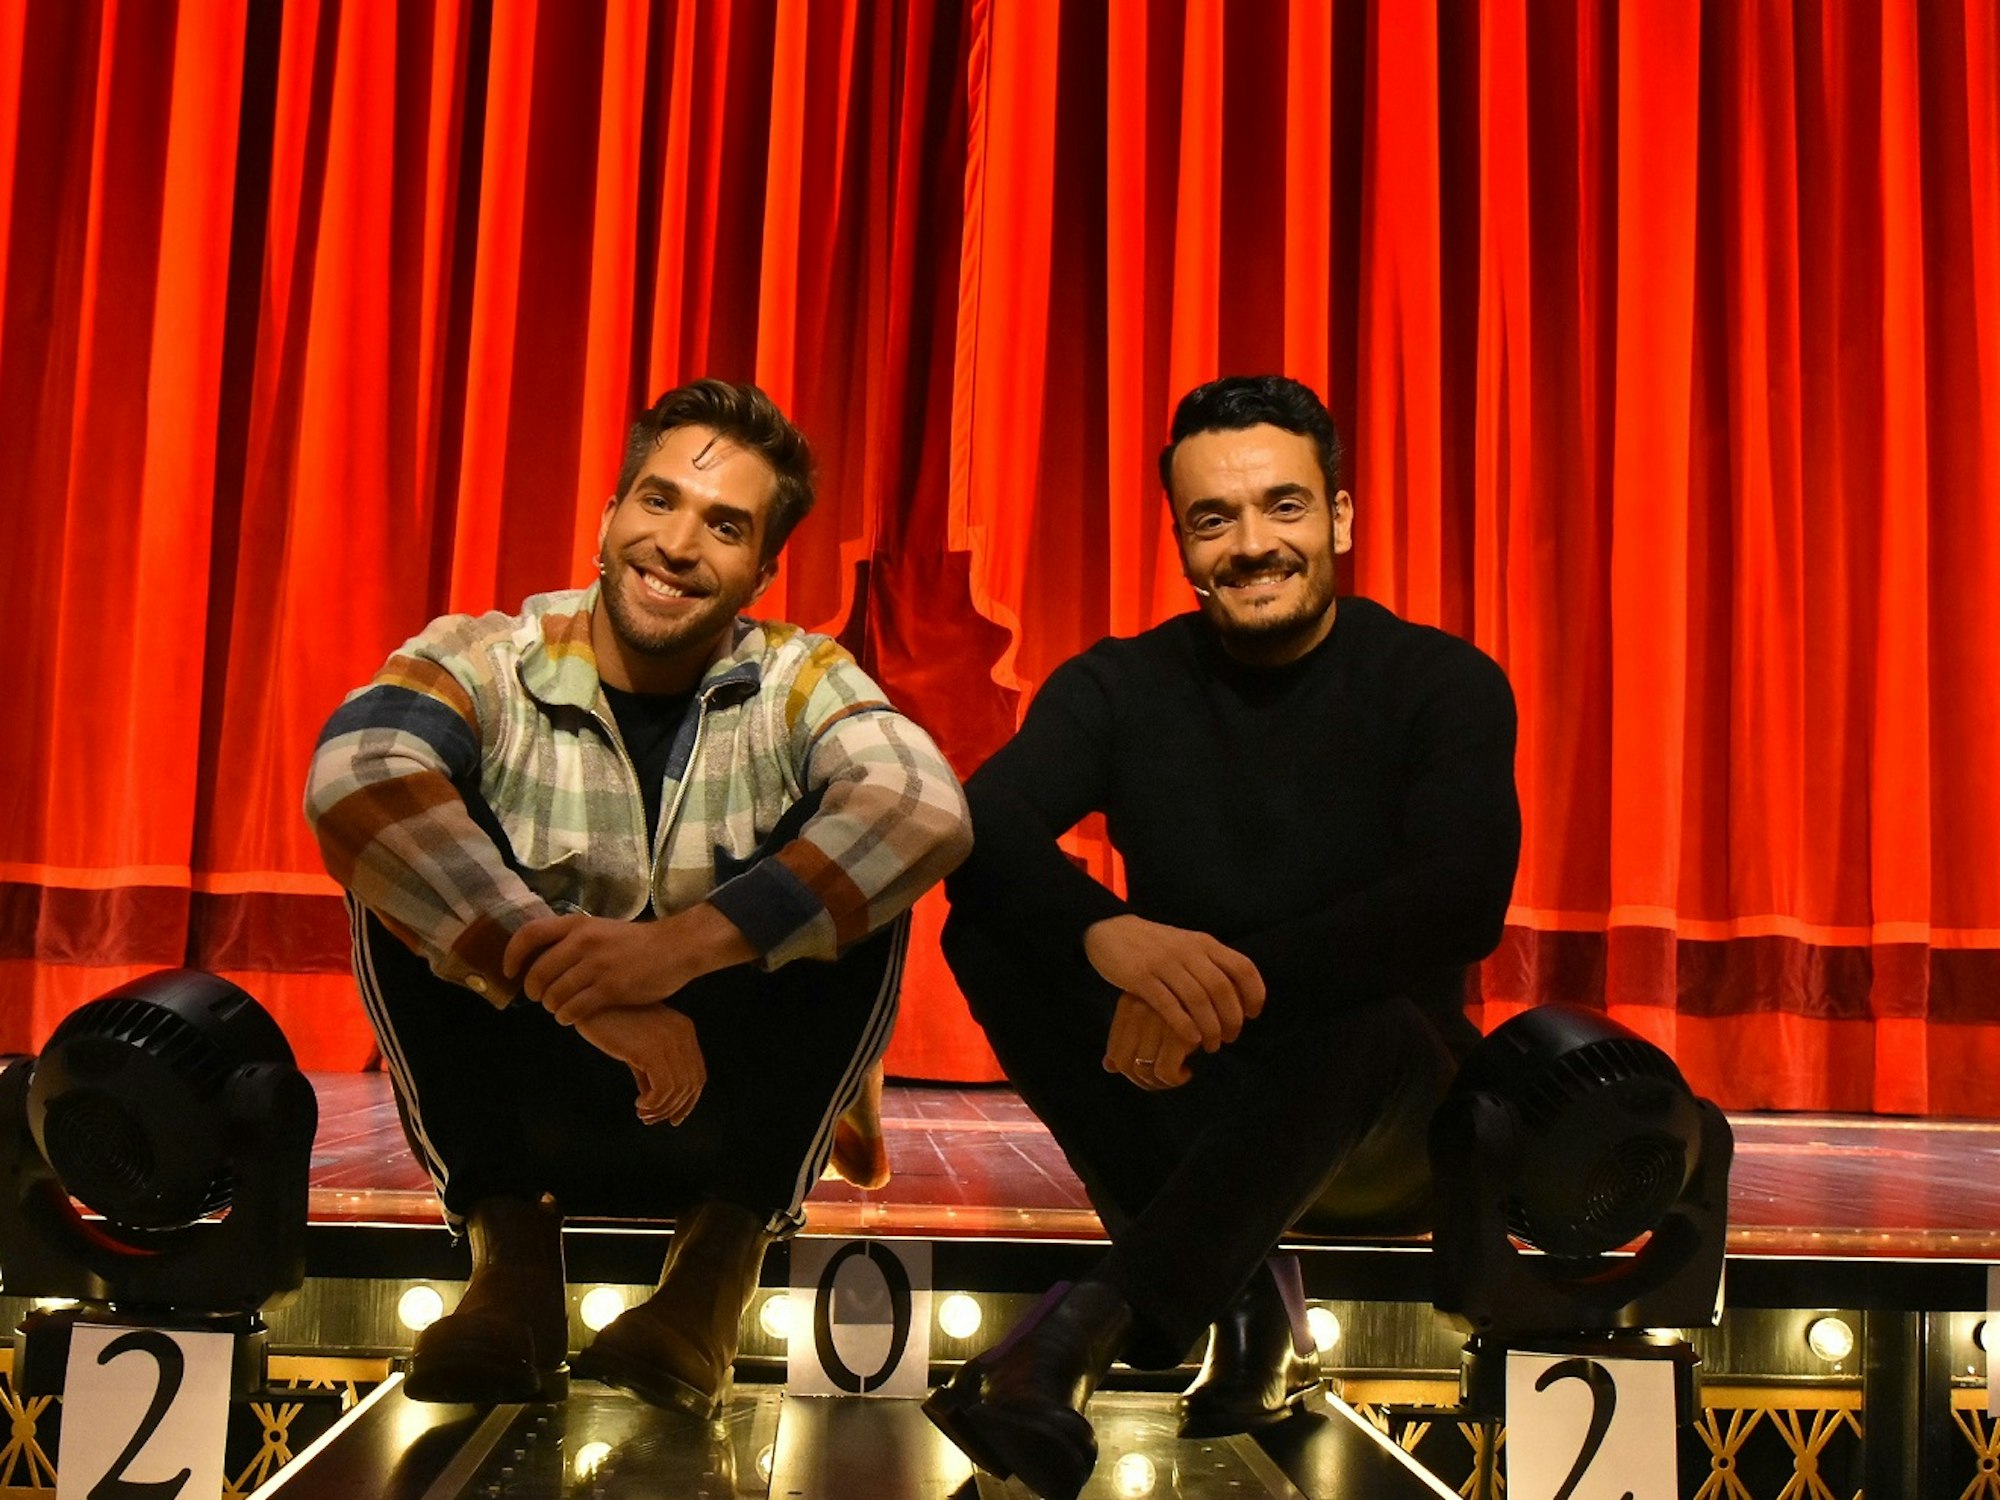 Riccardo Greco und Giovanni Zarrella sitzen lachend vor dem roten Vorhang auf der Bühne von Moulin Rouge.